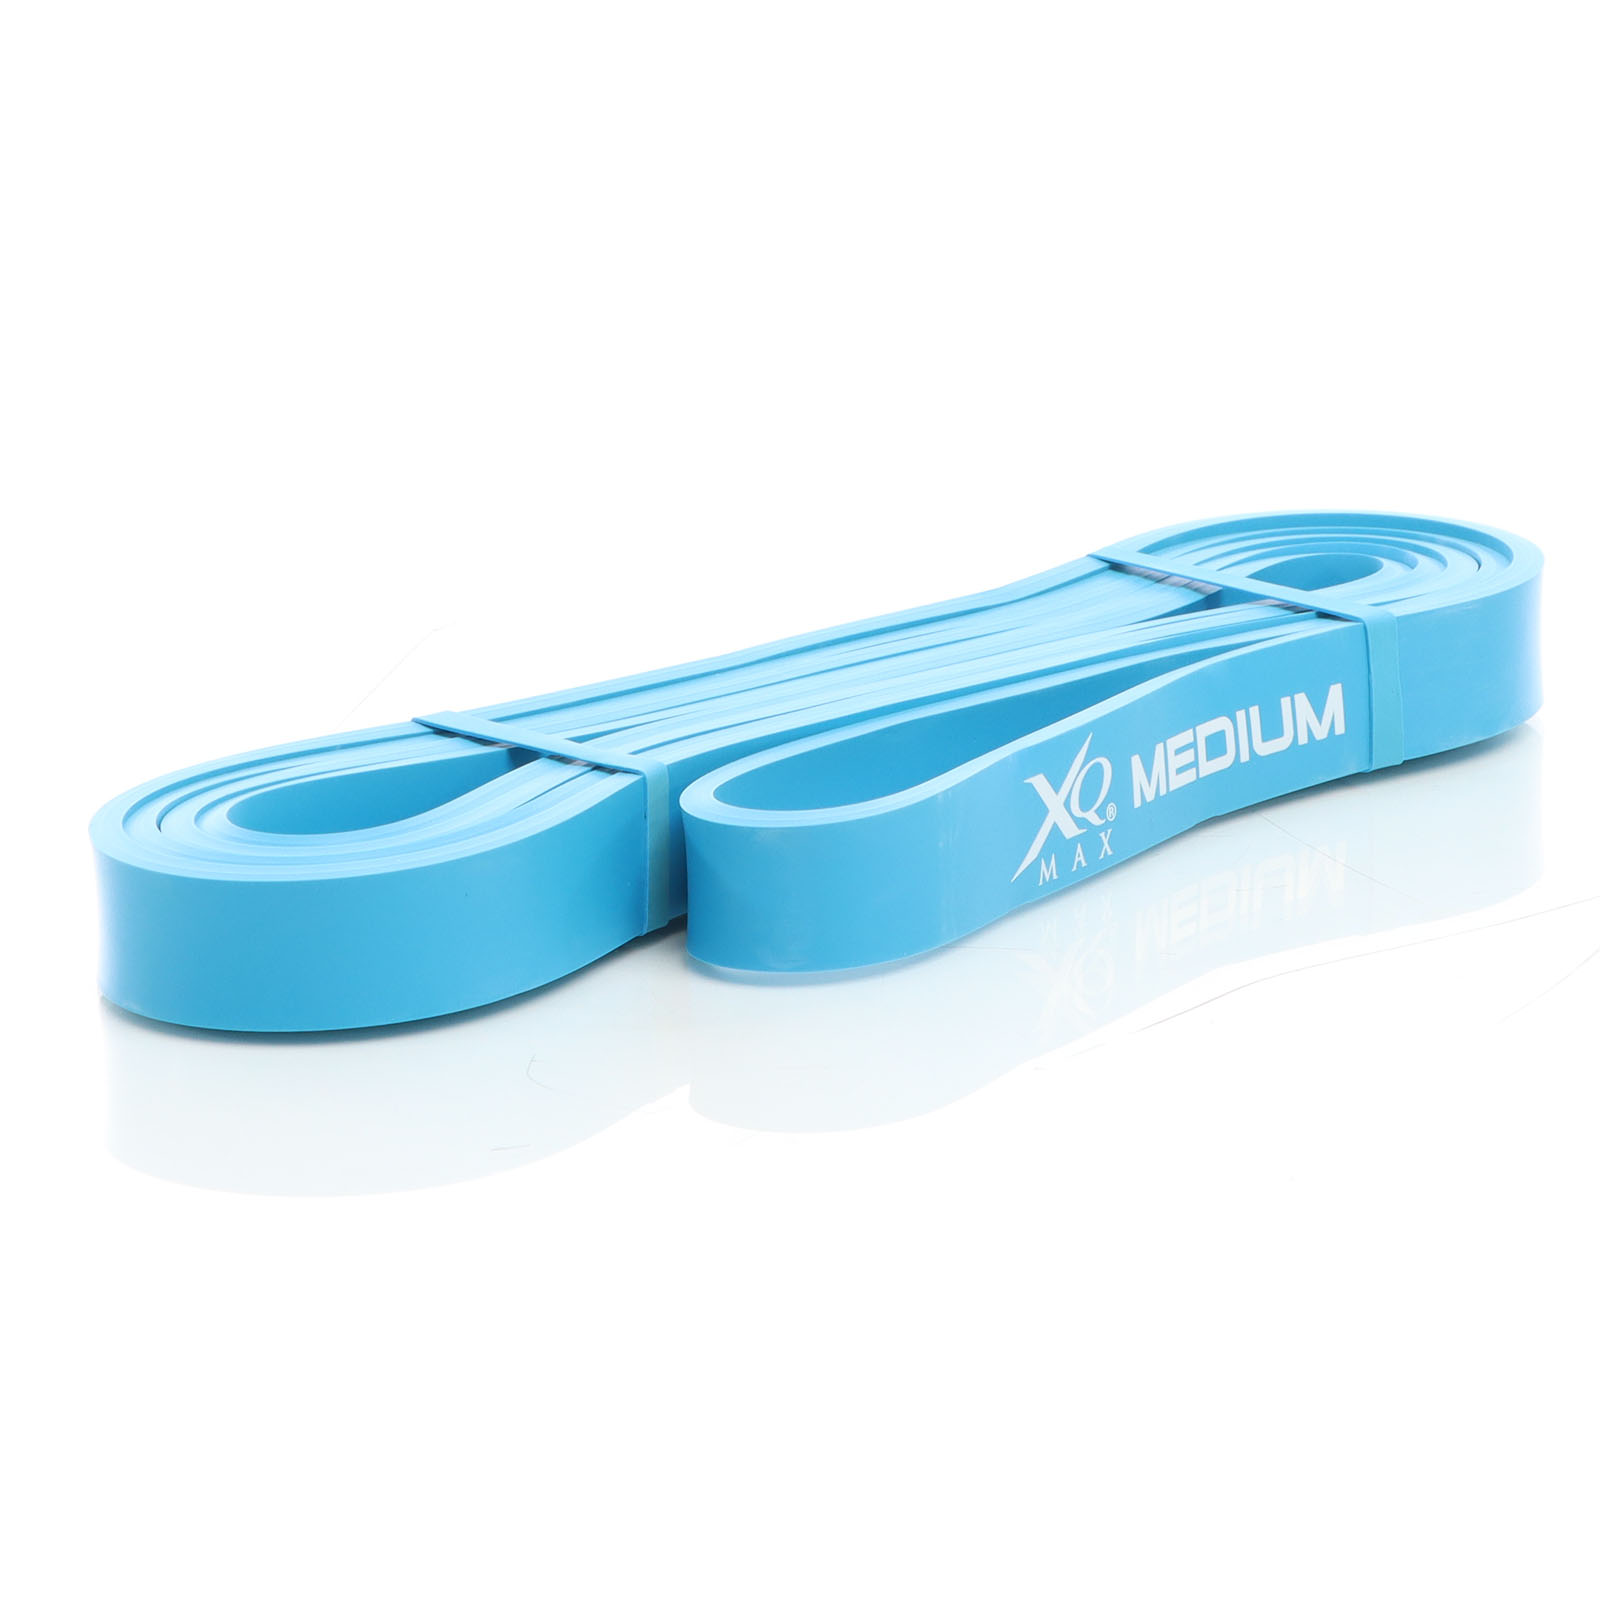 LUXTRI Fitnessband mit Widerstandsstärke medium 100% Latex in Blau